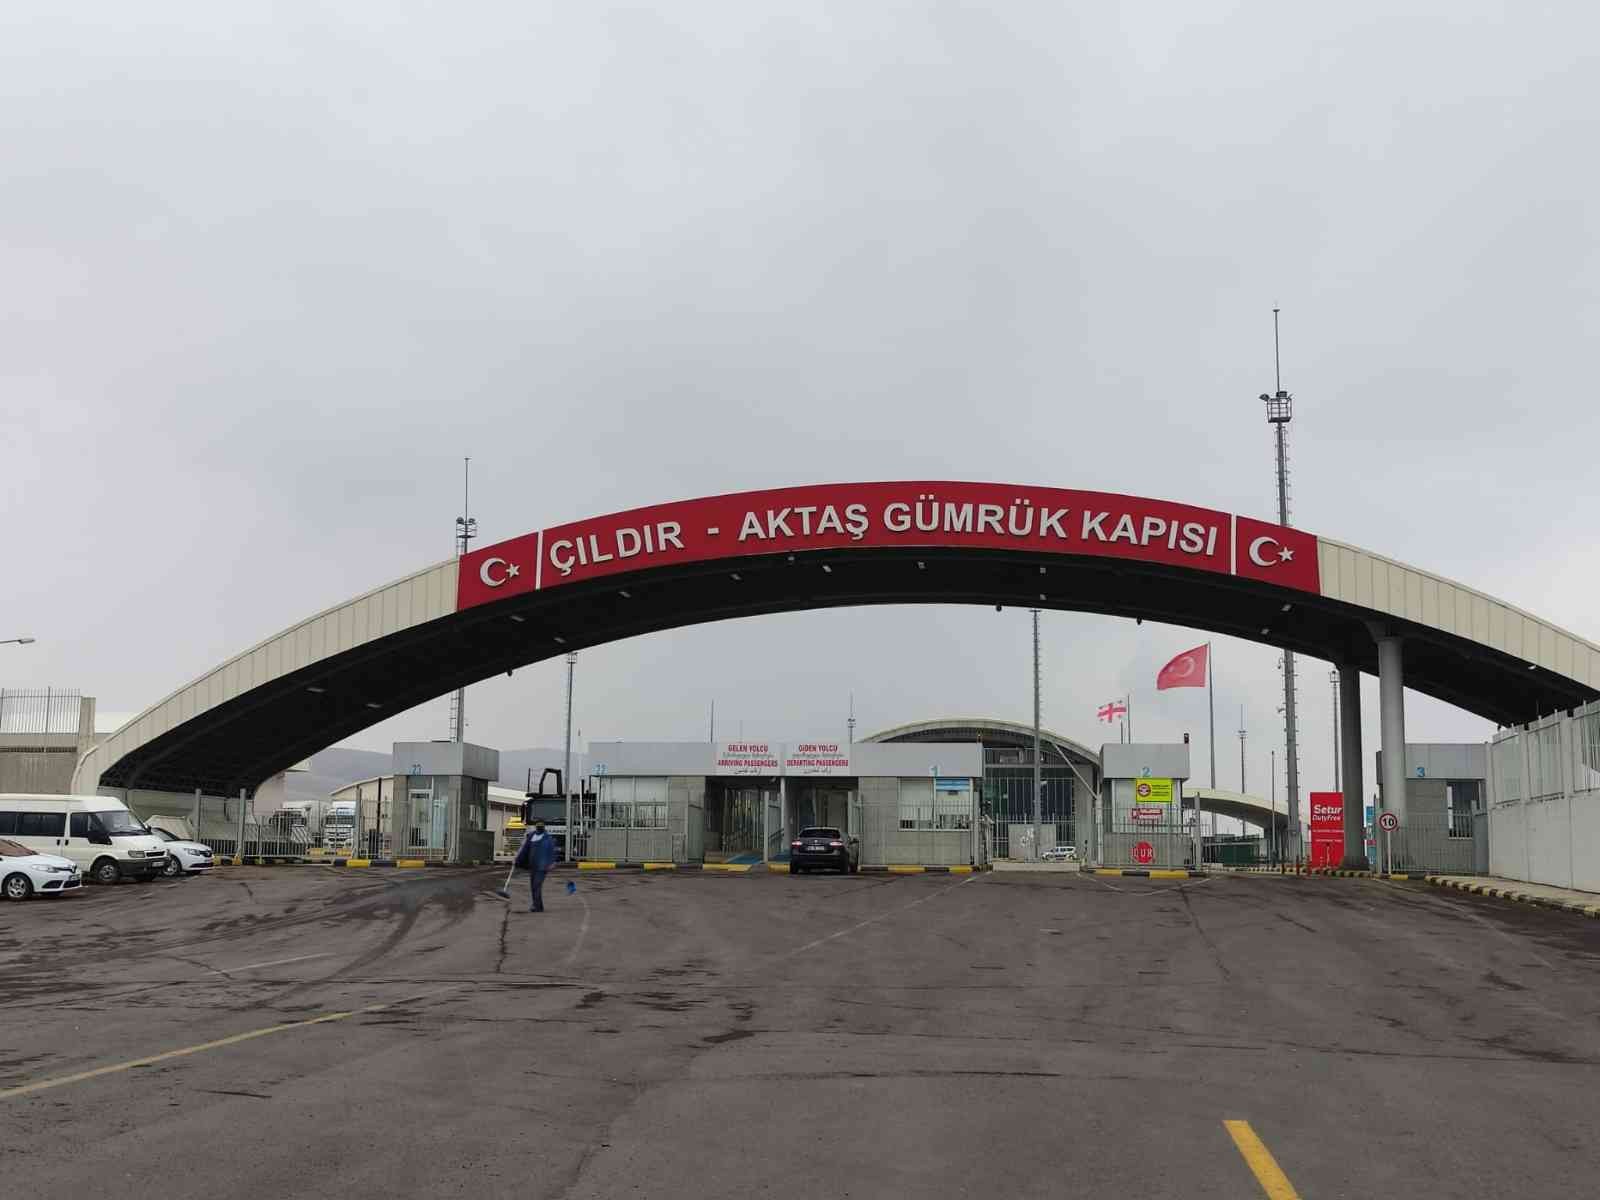 Gürcistan, sınır kapılarının yolcu trafiğine açılışını askıya aldı #ardahan